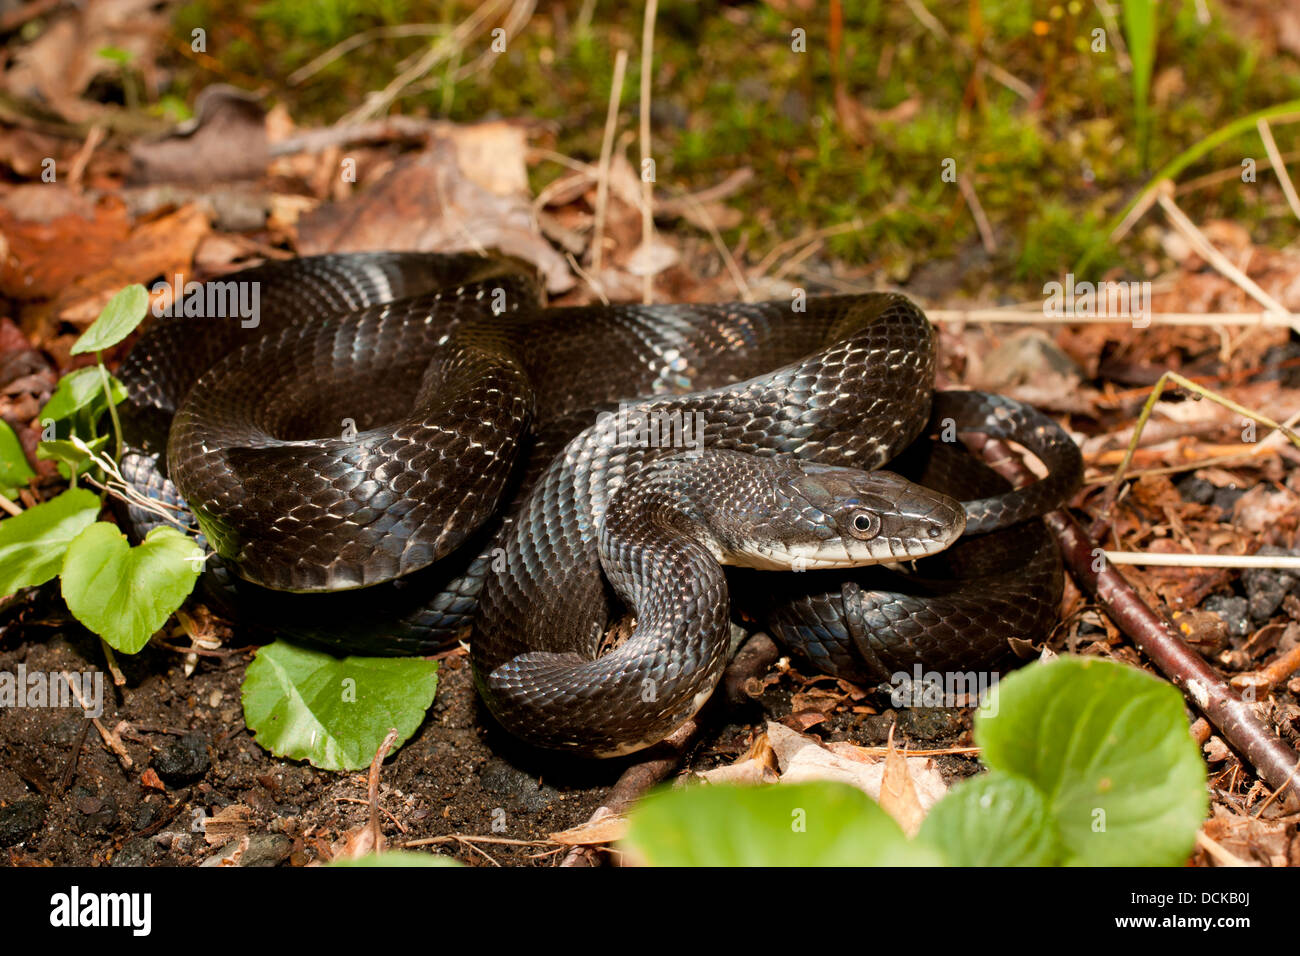 Eastern black rat snake - Pantherophis alleghaniensis (formerly Elaphe obsoleta) Stock Photo